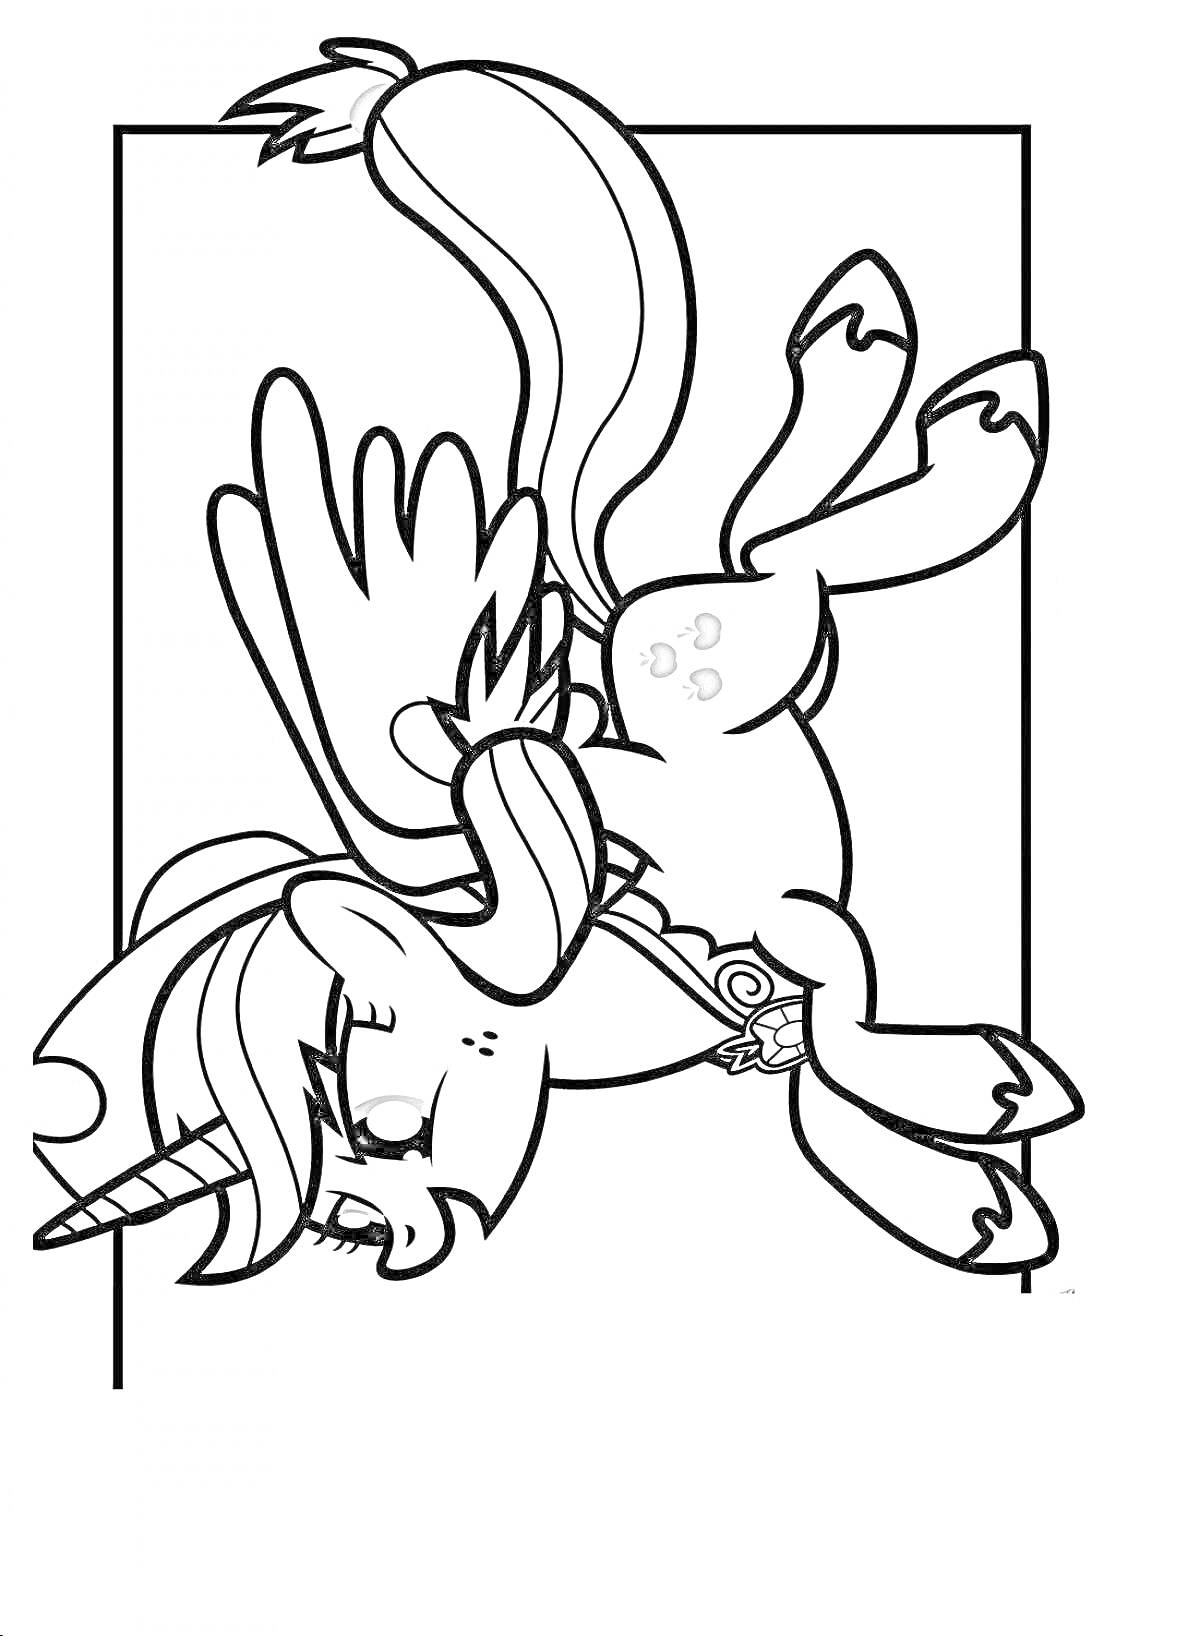 Раскраска Пони с крыльями и рогом в прыжке, с длинной гривой и хвостом, внутри прямоугольной рамки